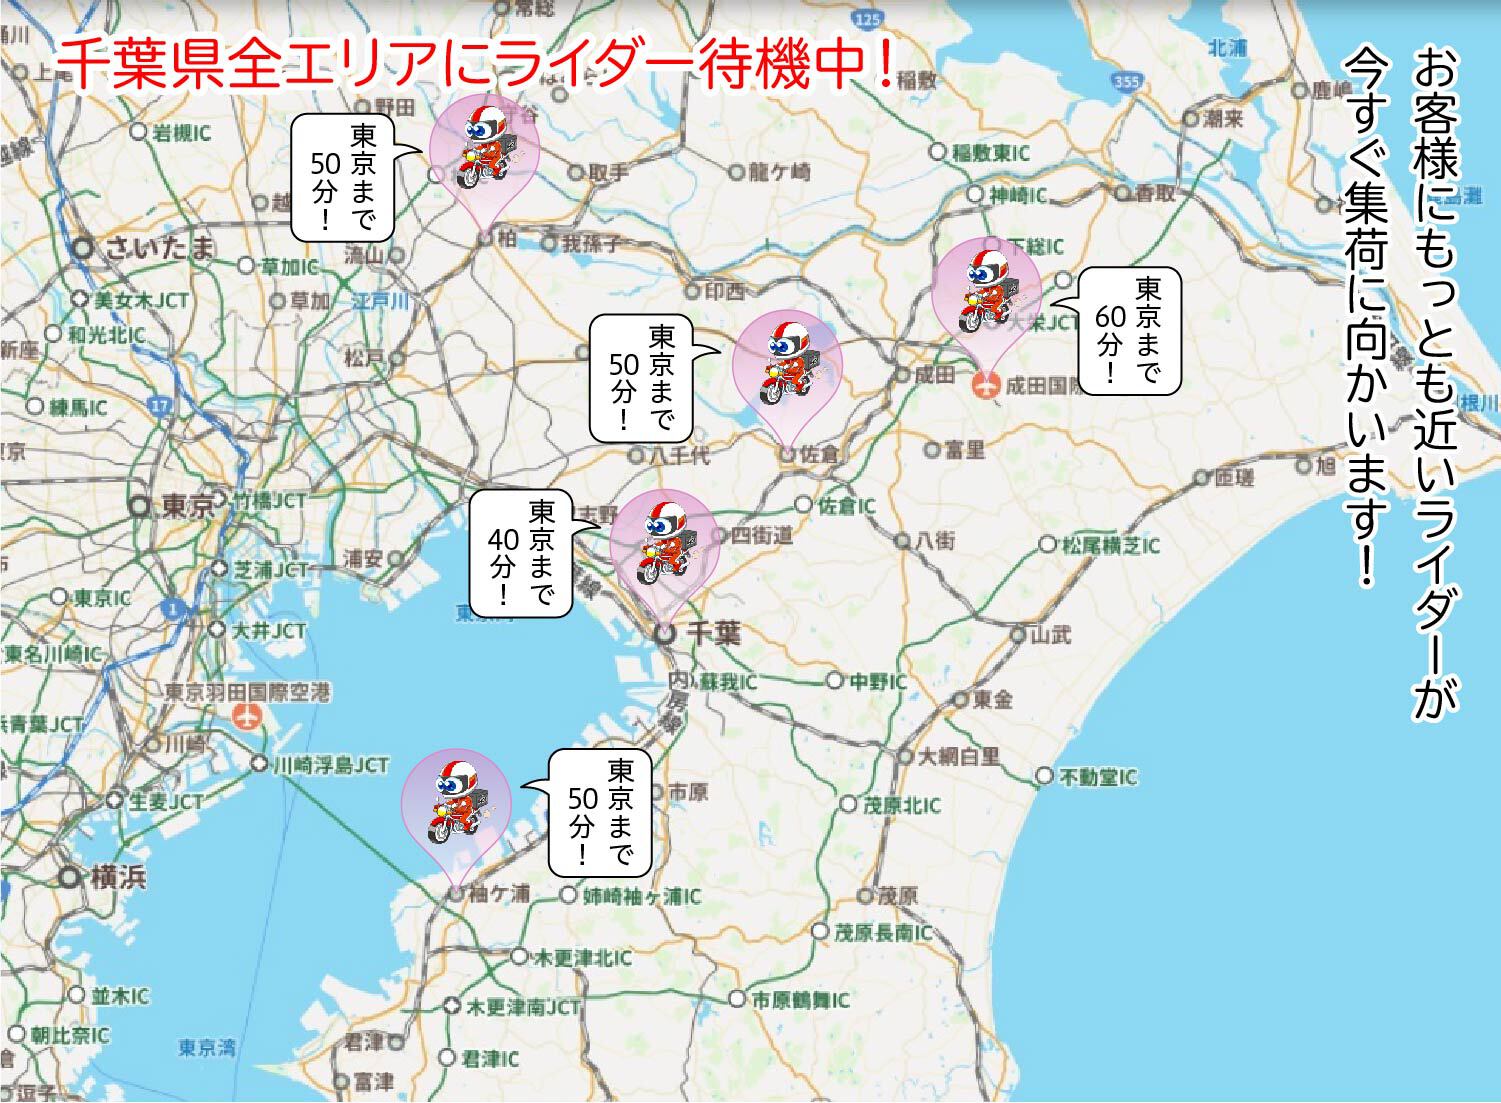 千葉市バイク便 地図